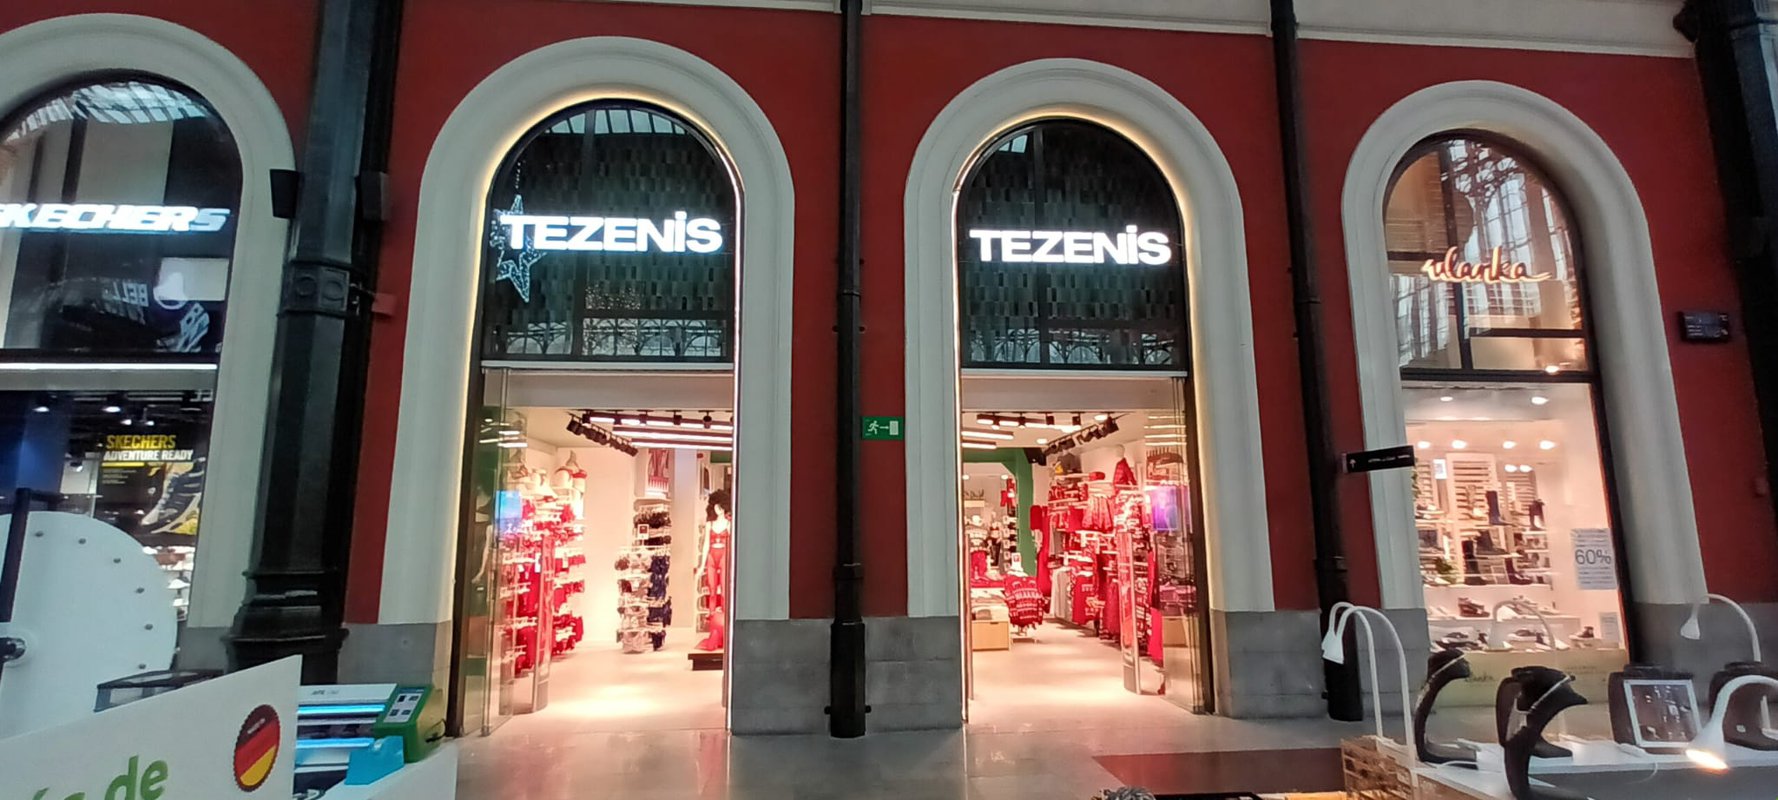 Tezenis abre una tienda de más de 240 metros cuadrados en Príncipe Pío